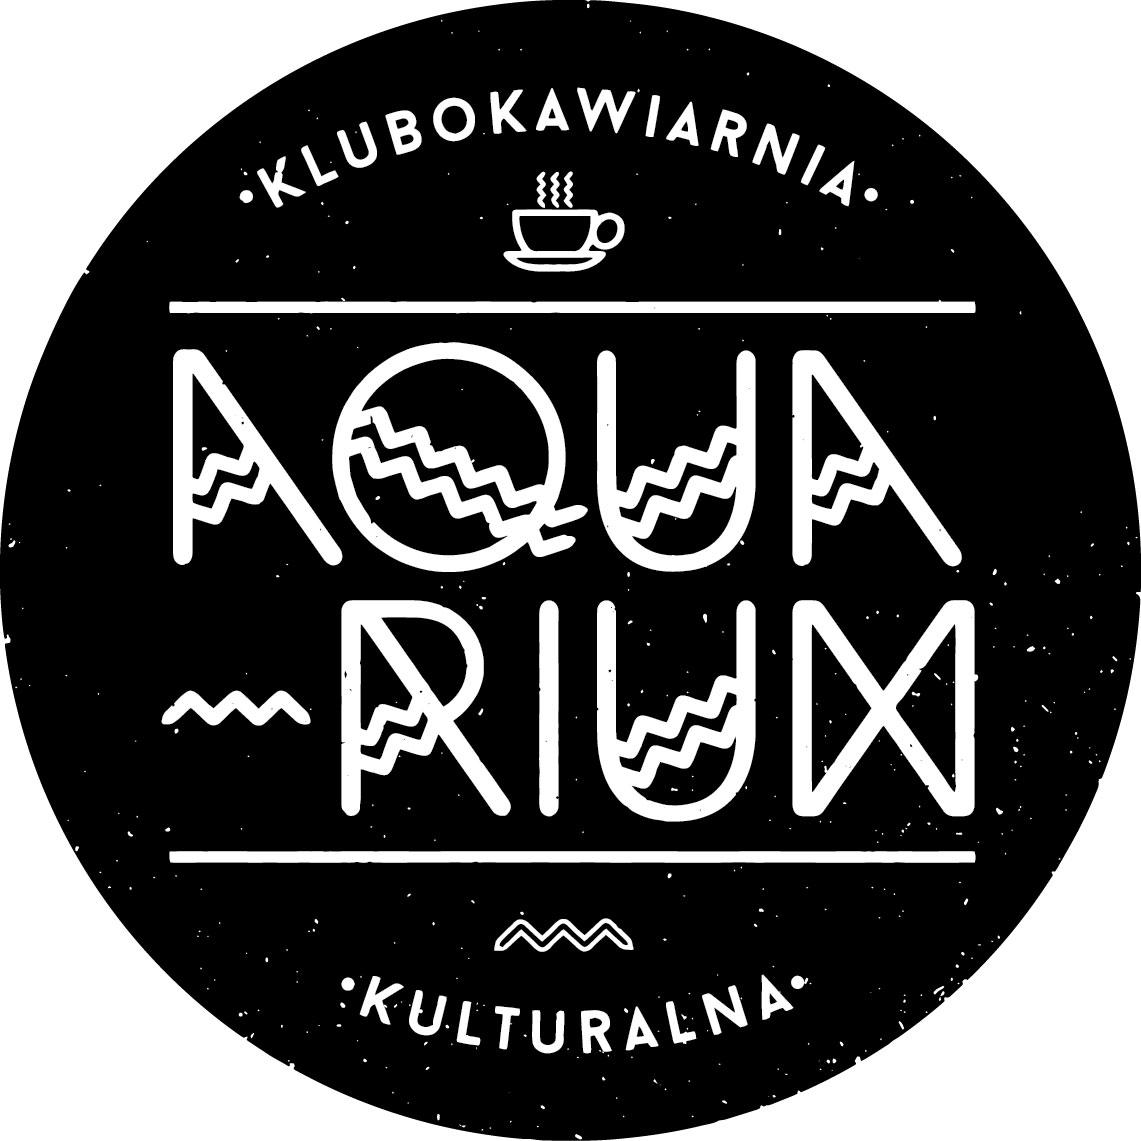  Jesienny ogród Na zdjęciu logo Aquarium